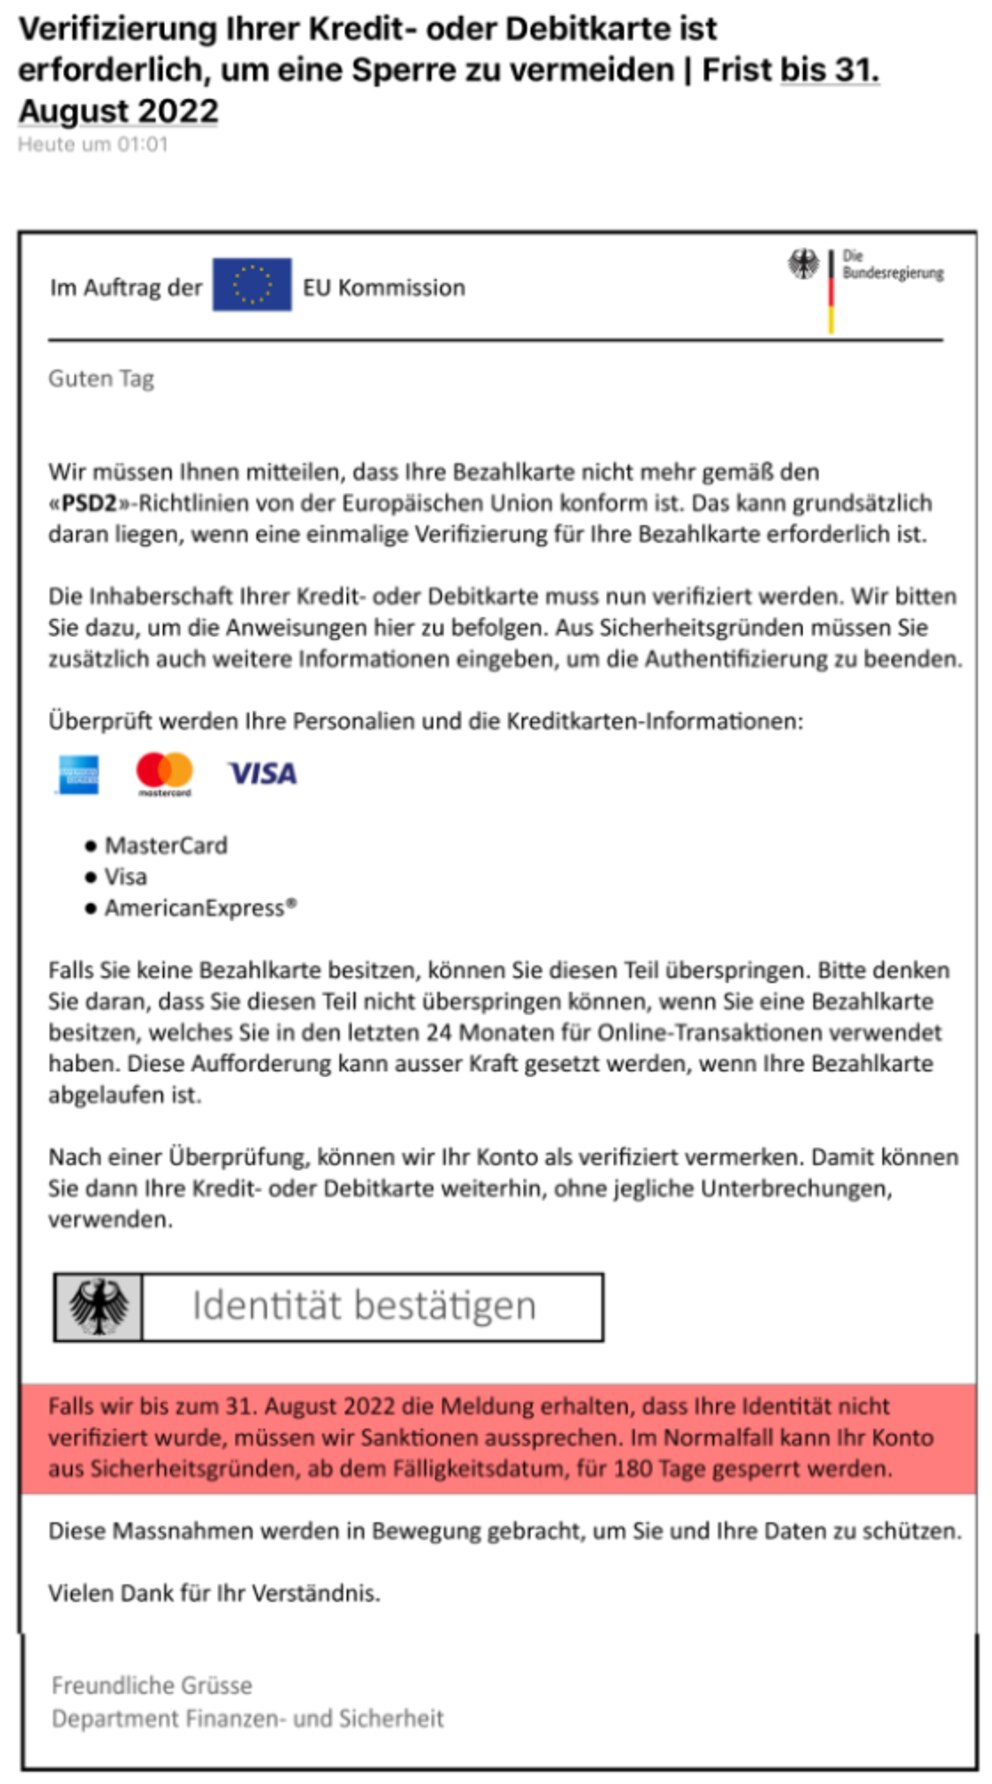 Phishing E-mail mit gefälschten Bundesregierung-Logo